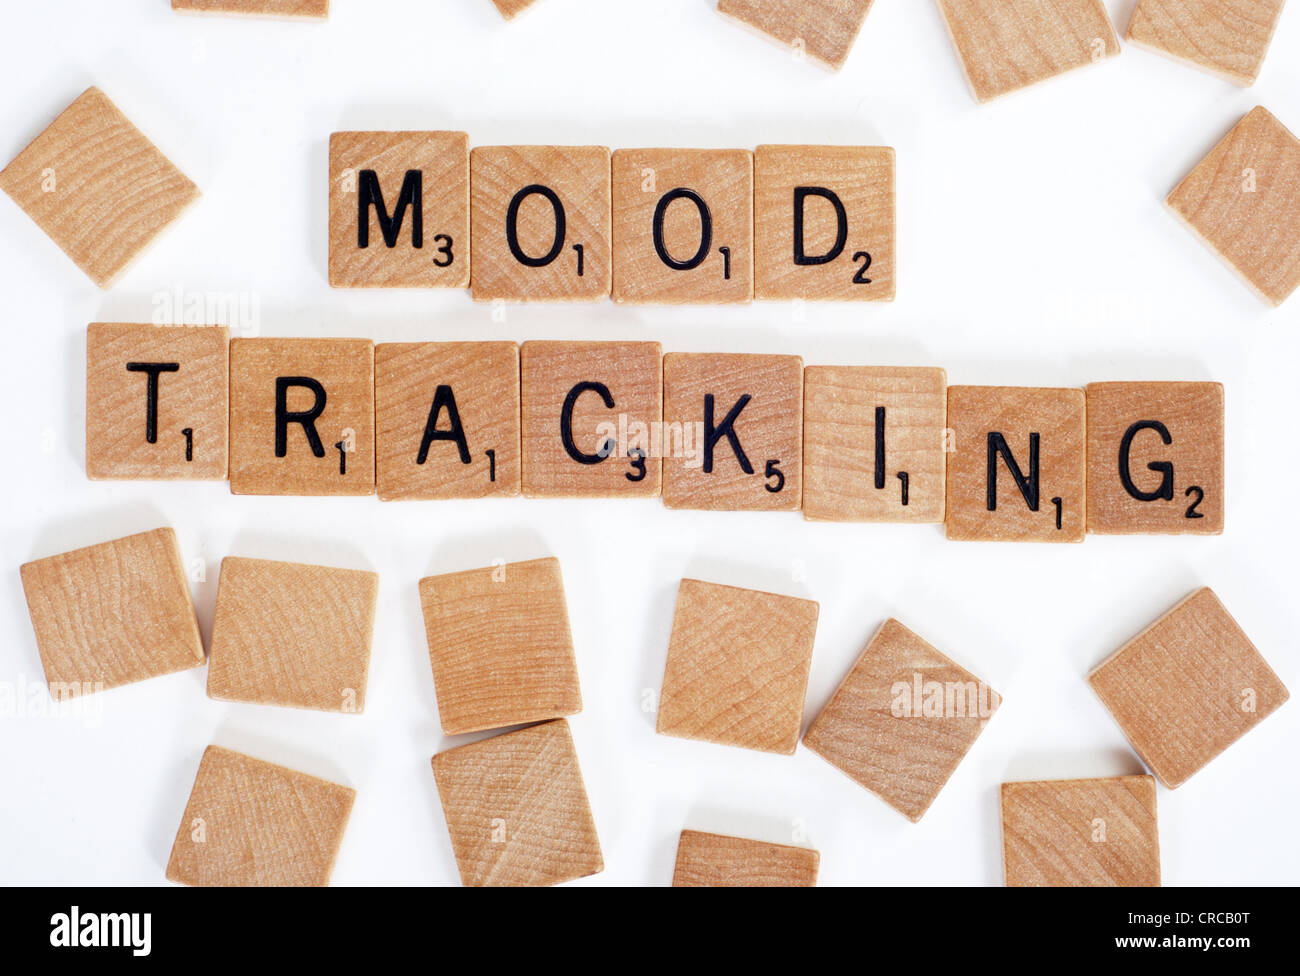 Holz-Scrabble Fliesen buchstabieren der Wörter "Tracking Stimmung". Auf weiß Stockfoto